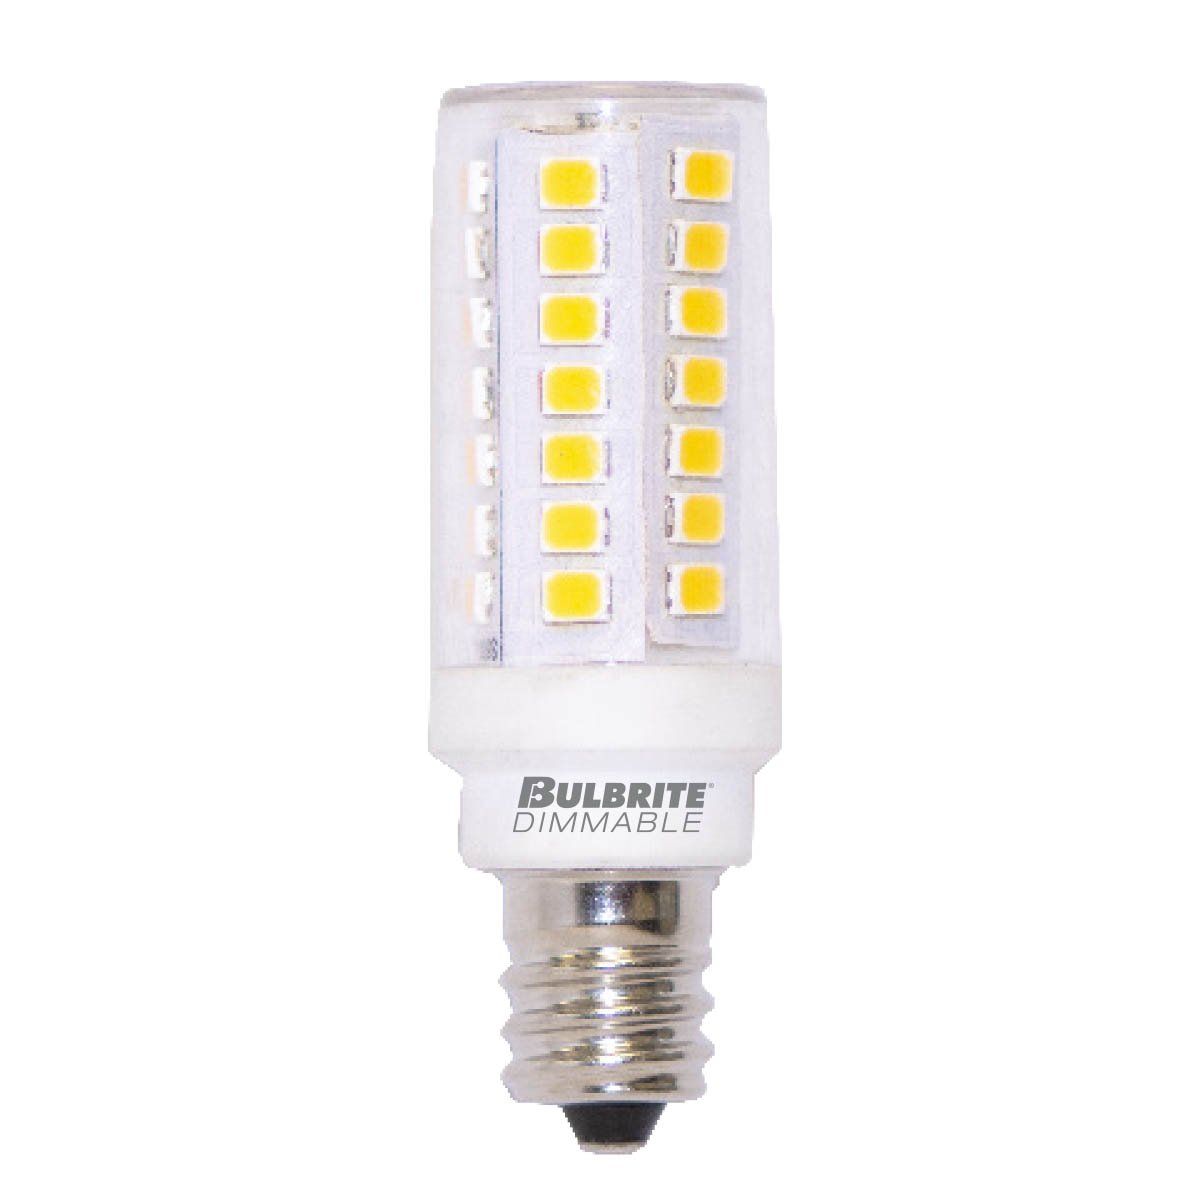 BULBRITE LED T6 MINI-CANDELABRA SCREW (E11) 5W DIMMABLE CLEAR LIGHT BULB 3000K/SOFT WHITE LIGHT 60W EQUIVALENT 2PK (770630)